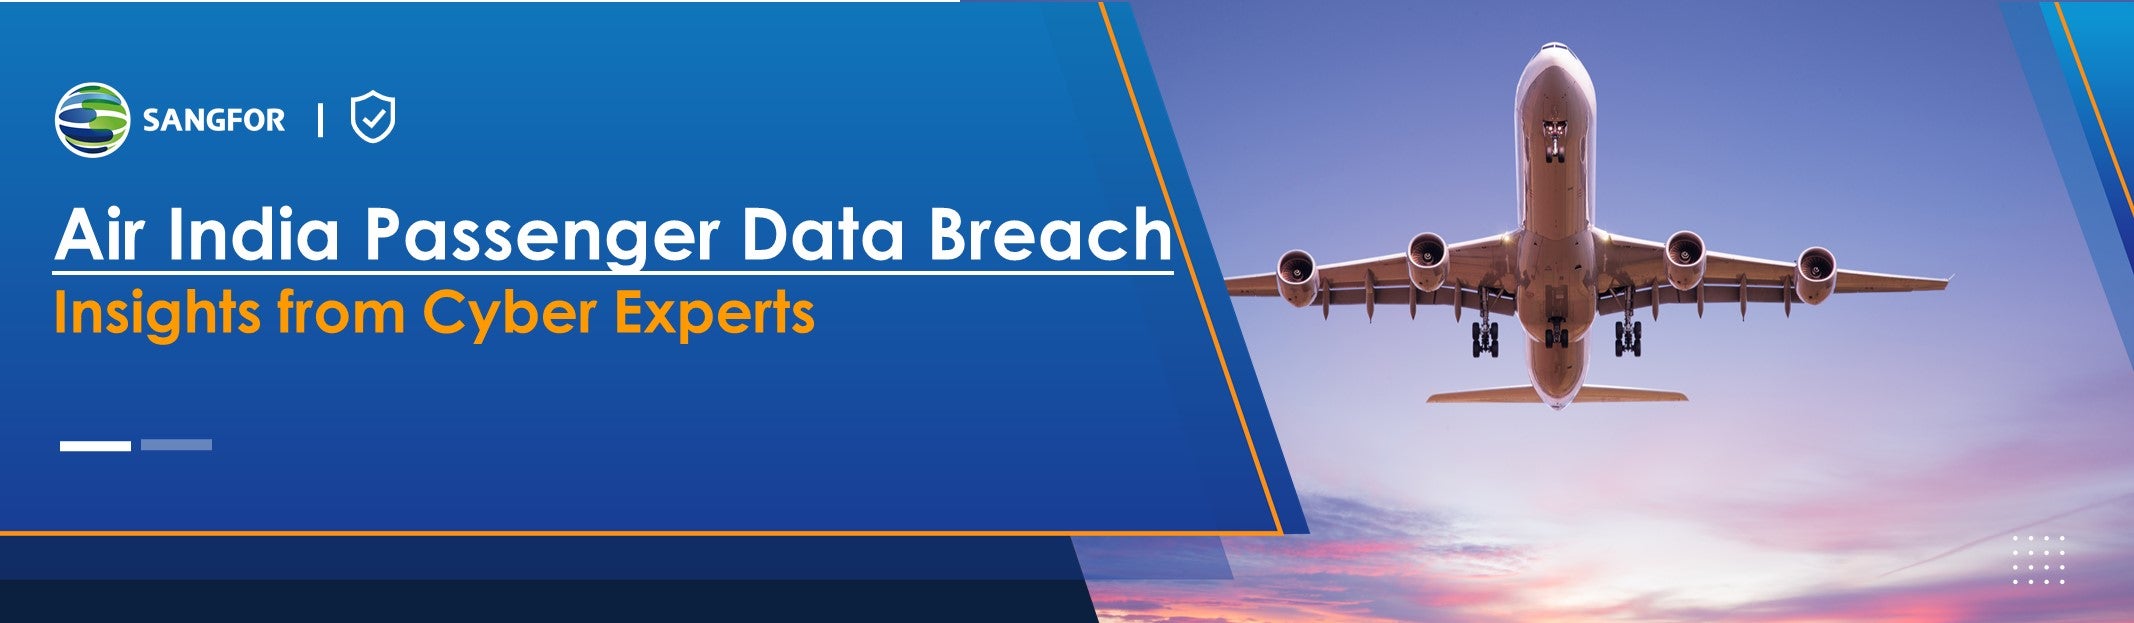 Air India Data Breach Article